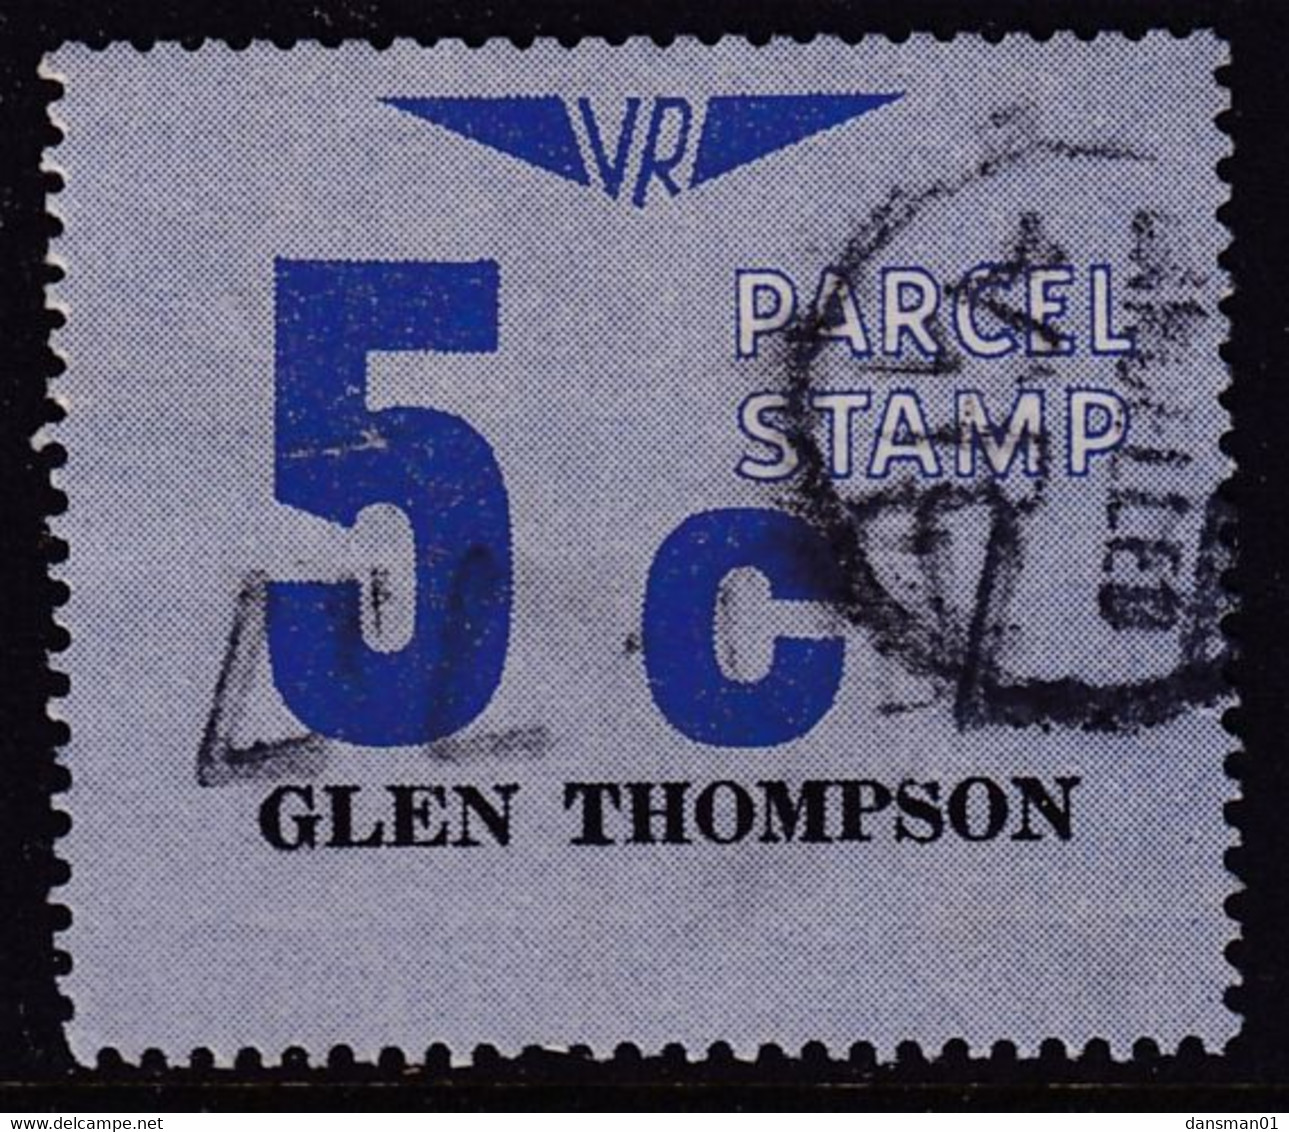 Victoria 1966 Railway Parcel Stamp 5c GLEN THOMPSON Used - Abarten Und Kuriositäten